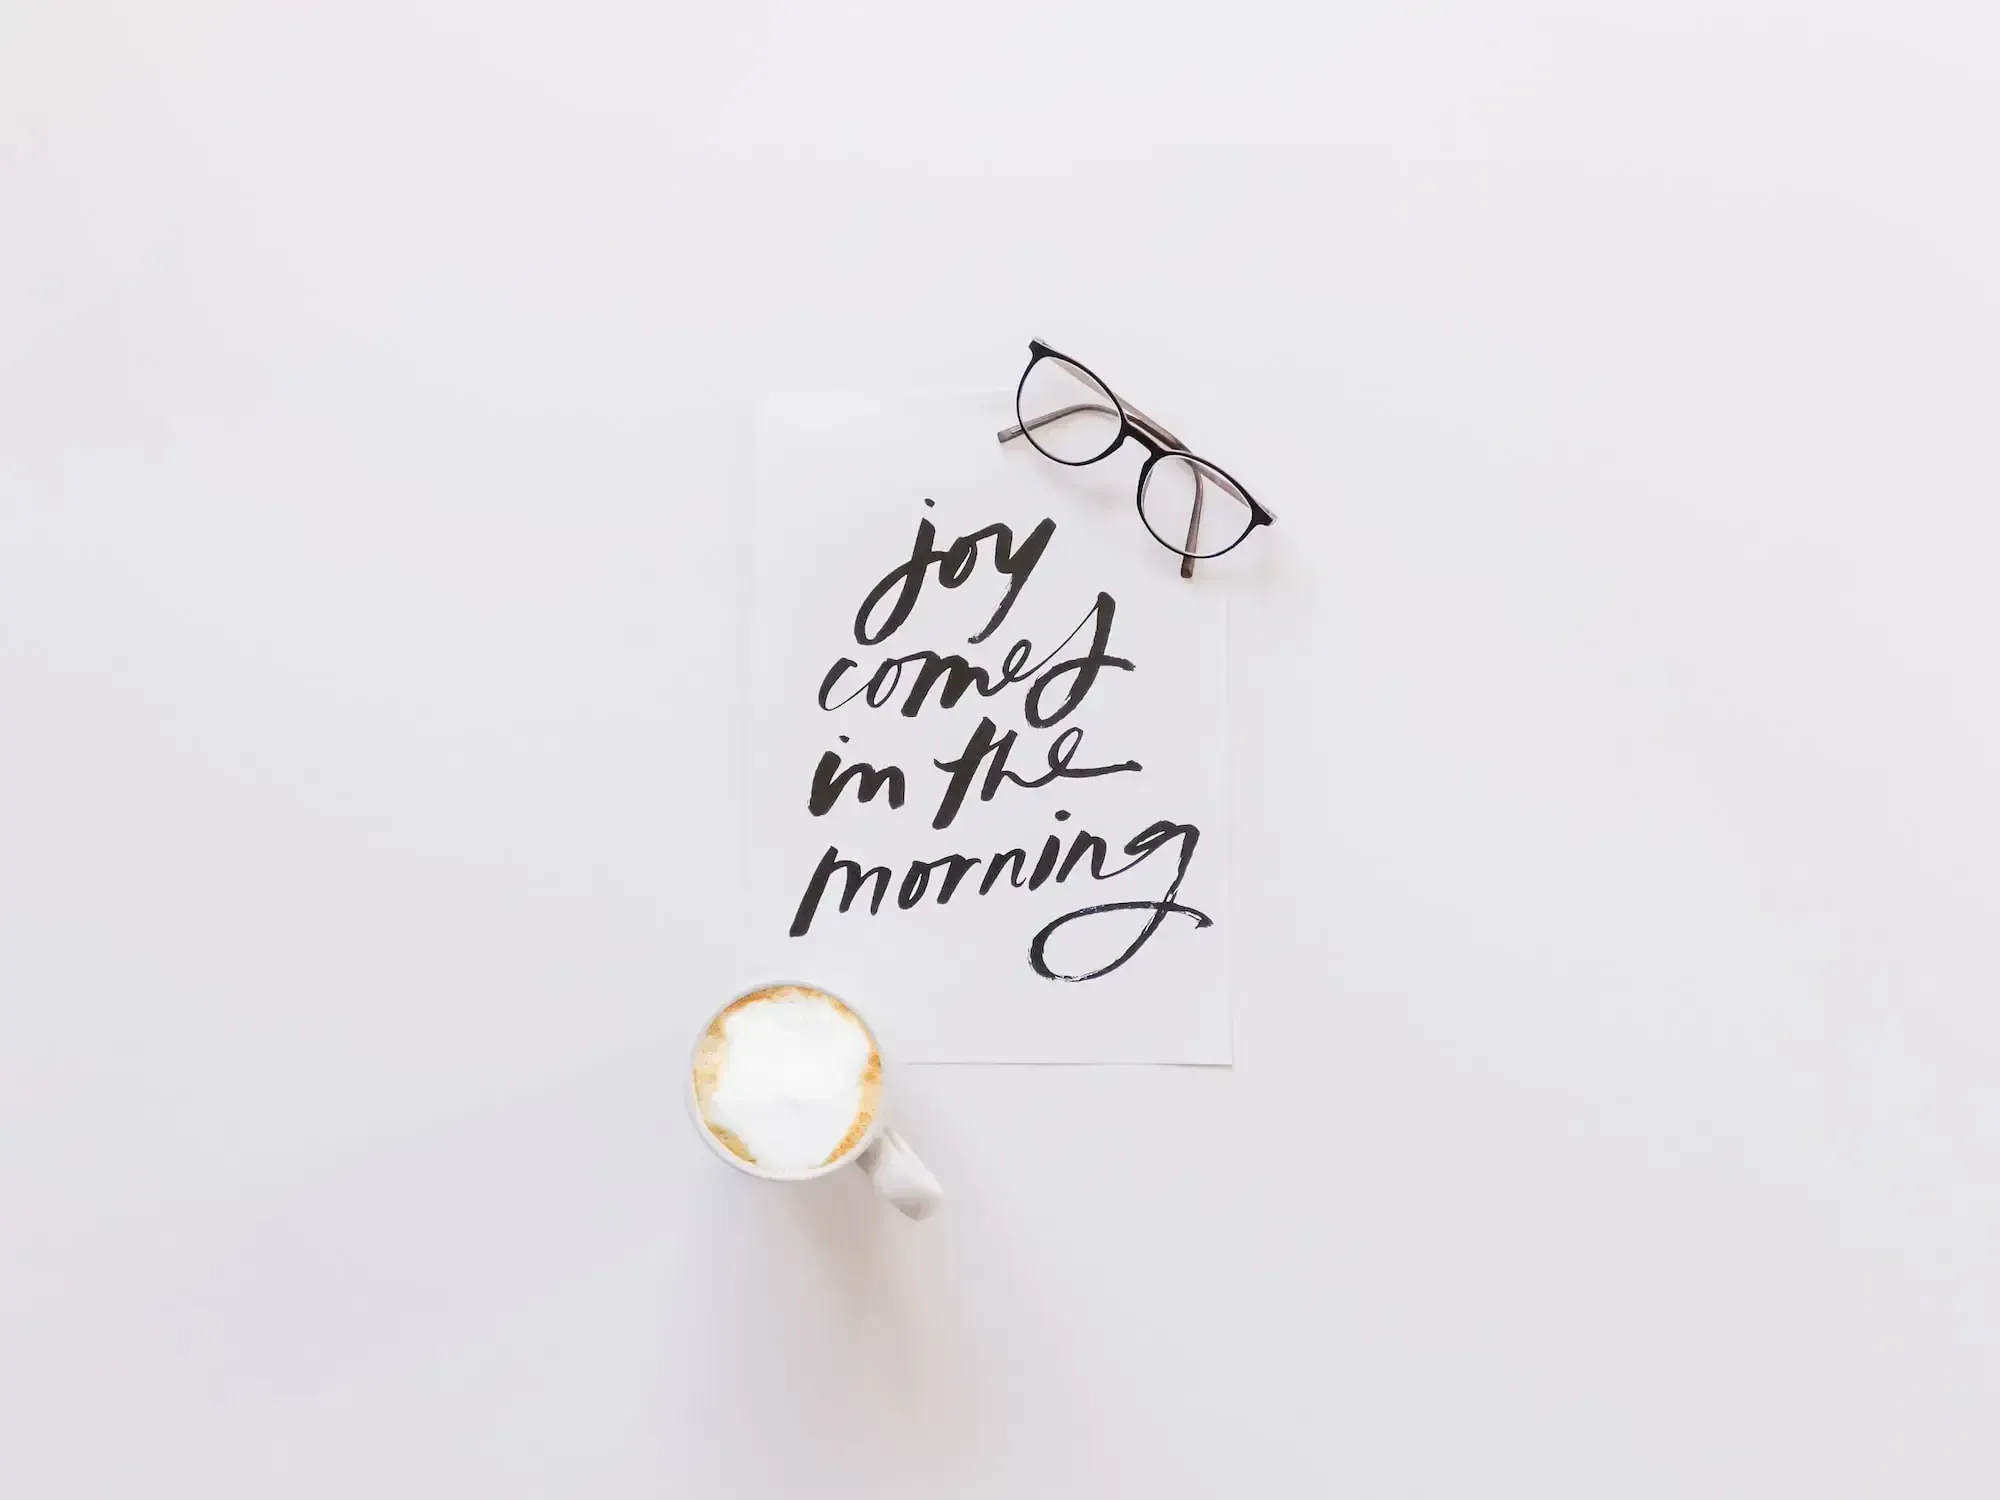 "joy comes in the morning" auf Blatt Papier, Brille und eine Tasse Cappuccino daneben.